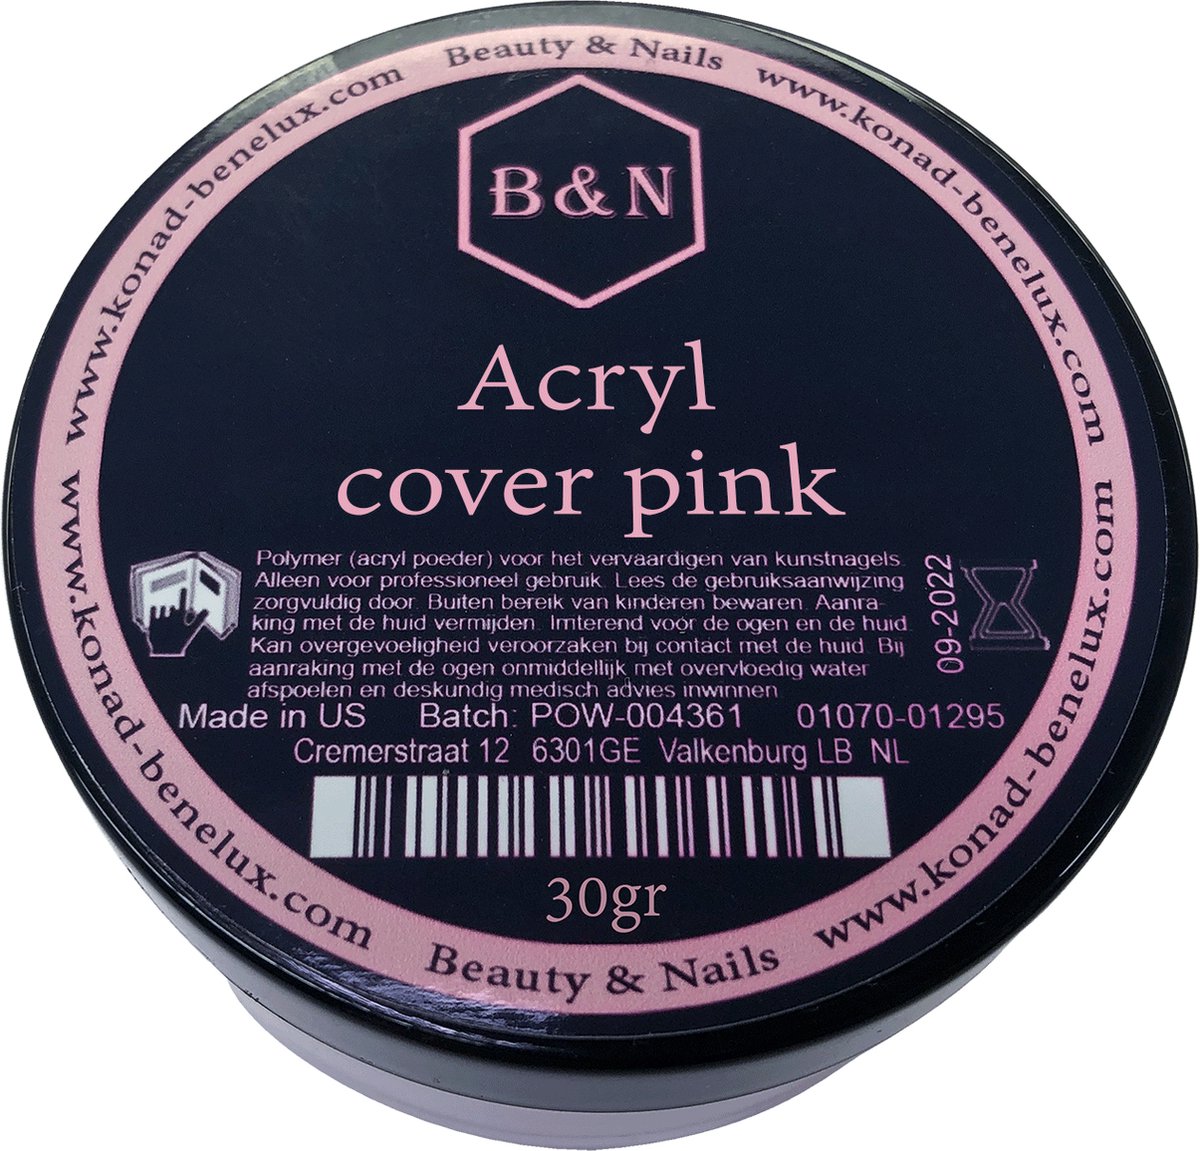 Acryl - cover pink - 30 gr | B&N - acrylpoeder - VEGAN - acrylpoeder